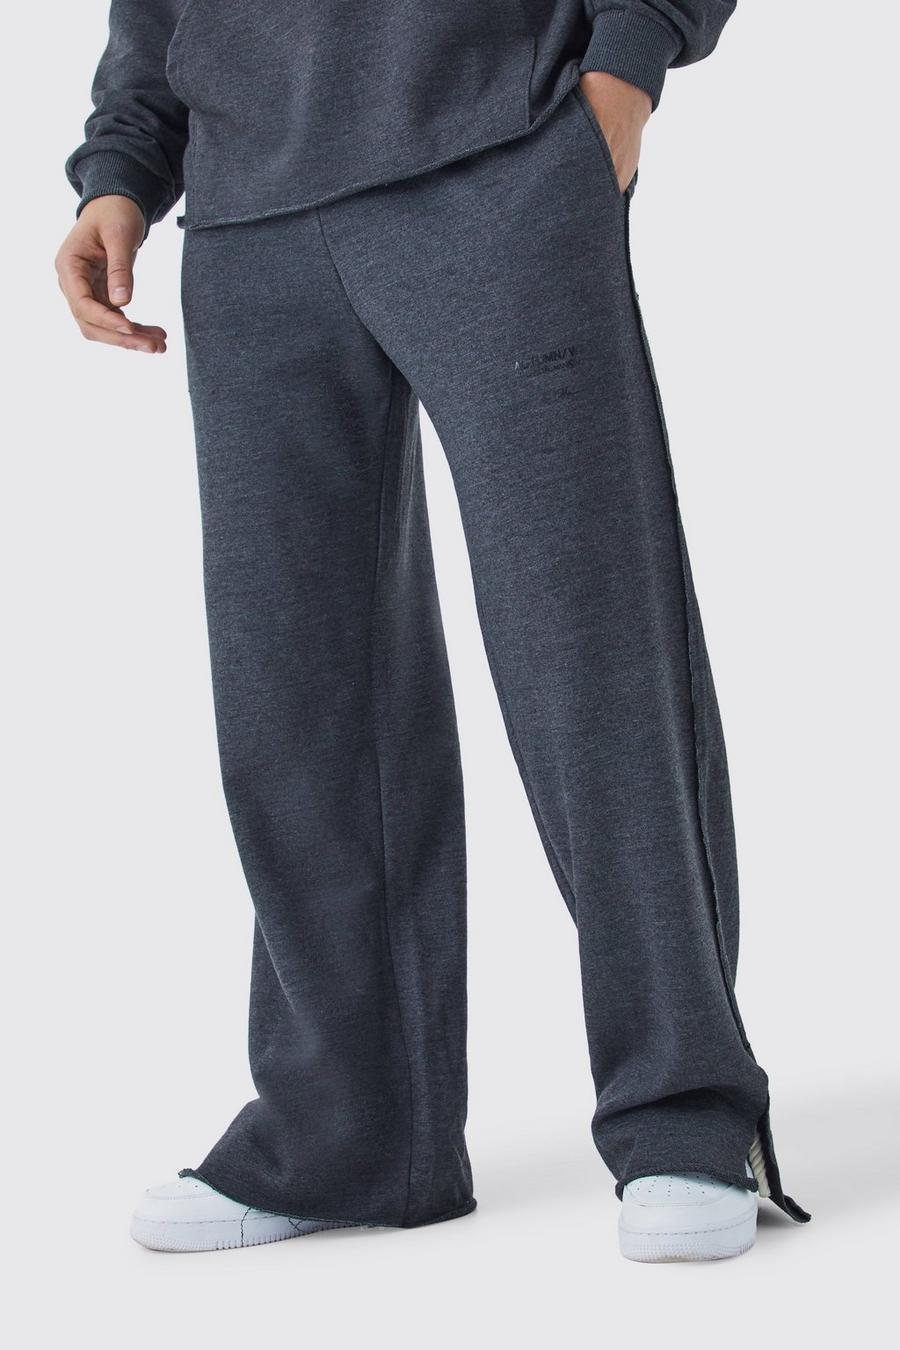 Pantalón deportivo de pernera ancha y tela rizo gruesa con estampado, Grey